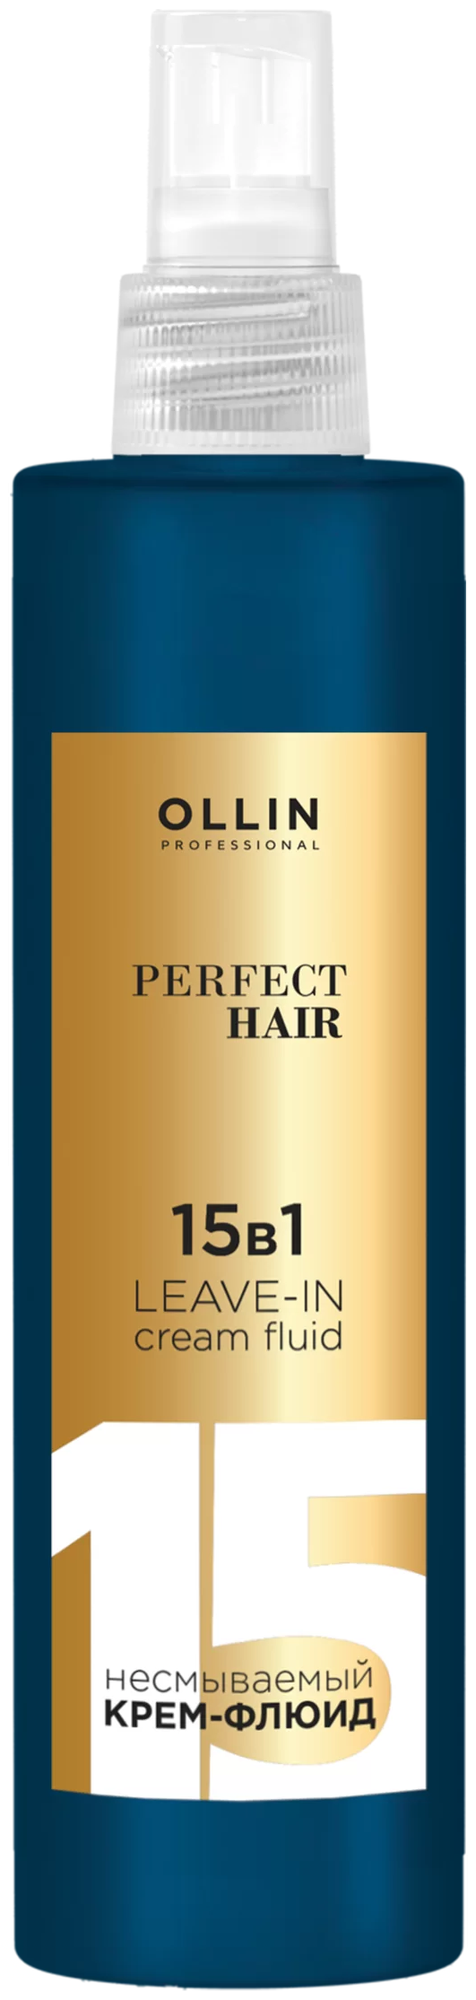 OLLIN PROFESSIONAL PERFECT HAIR Несмываемый крем-флюид 15 в 1 для всех типов волос 250мл